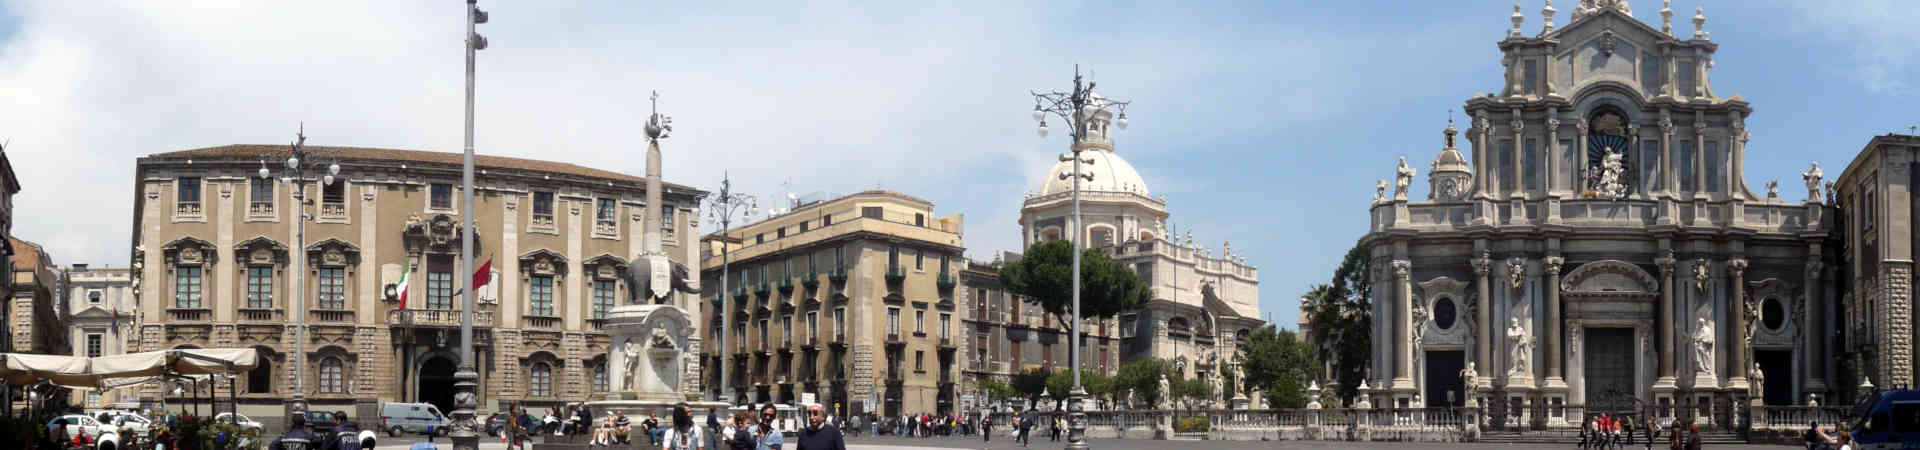 Imagen recurso del puerto de destino Catania para la ruta en ferry Salerno - Catania